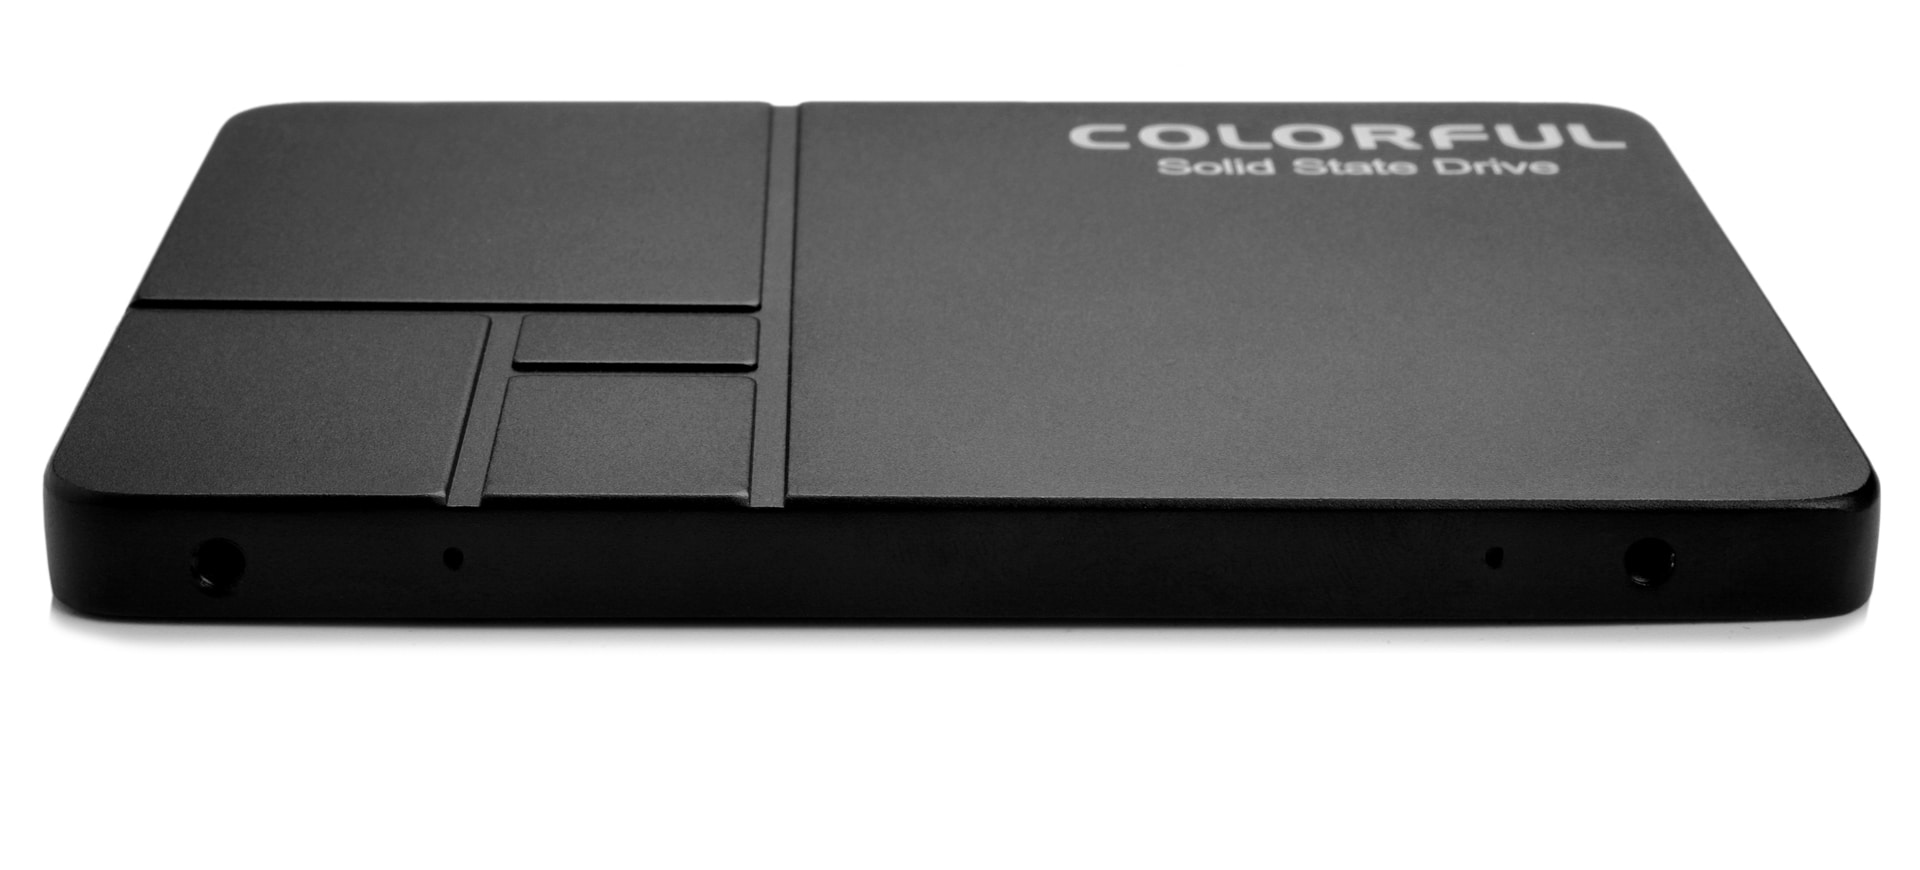 COLORFUL mở rộng dải sản phẩm với ổ SL500 dung lượng 960GB - Tin Gaming Gear